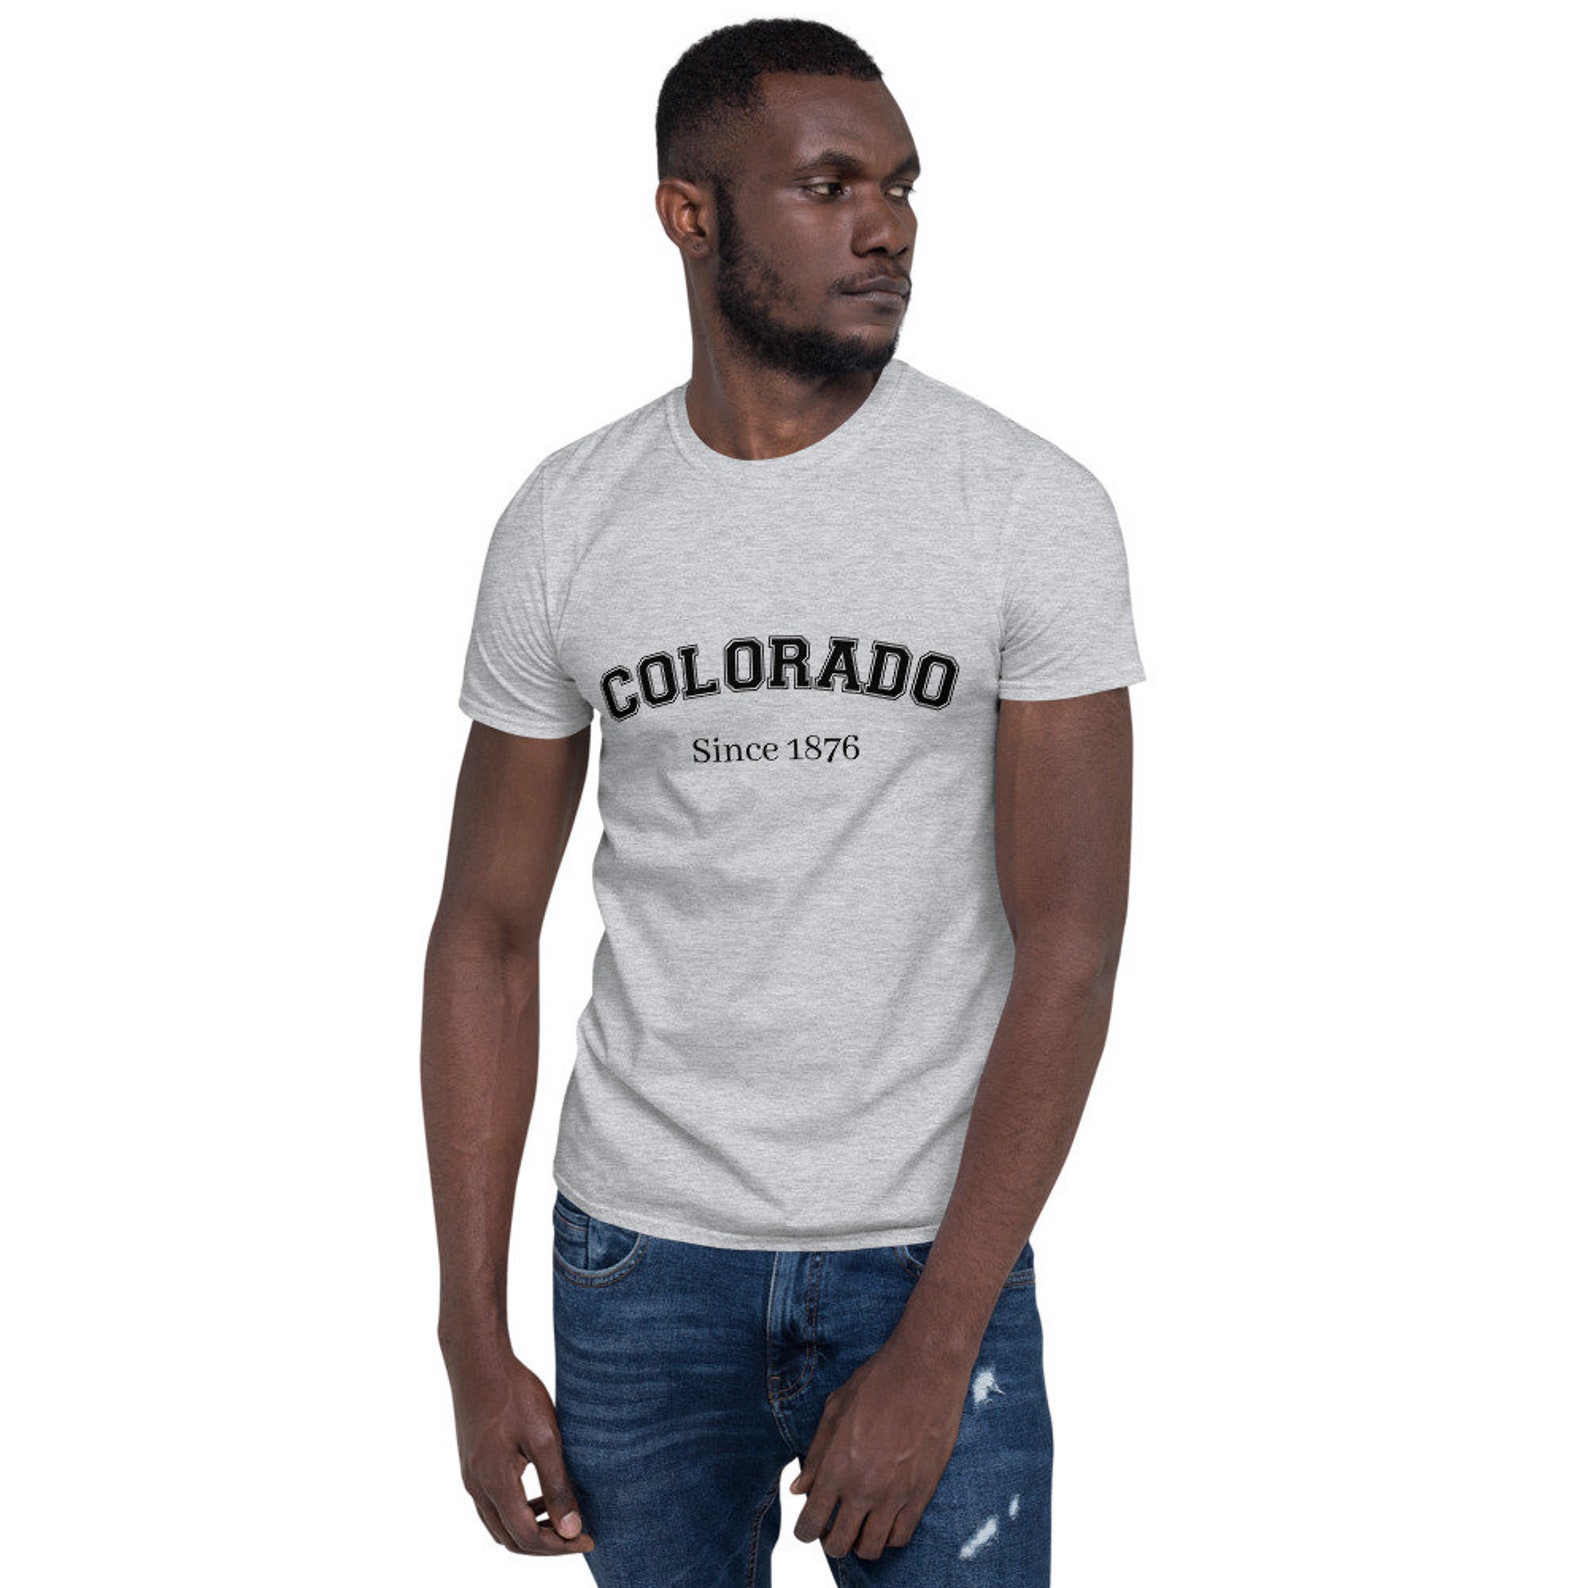 Colorado T-Shirt Colorado Tee Colorado shirt | Etsy